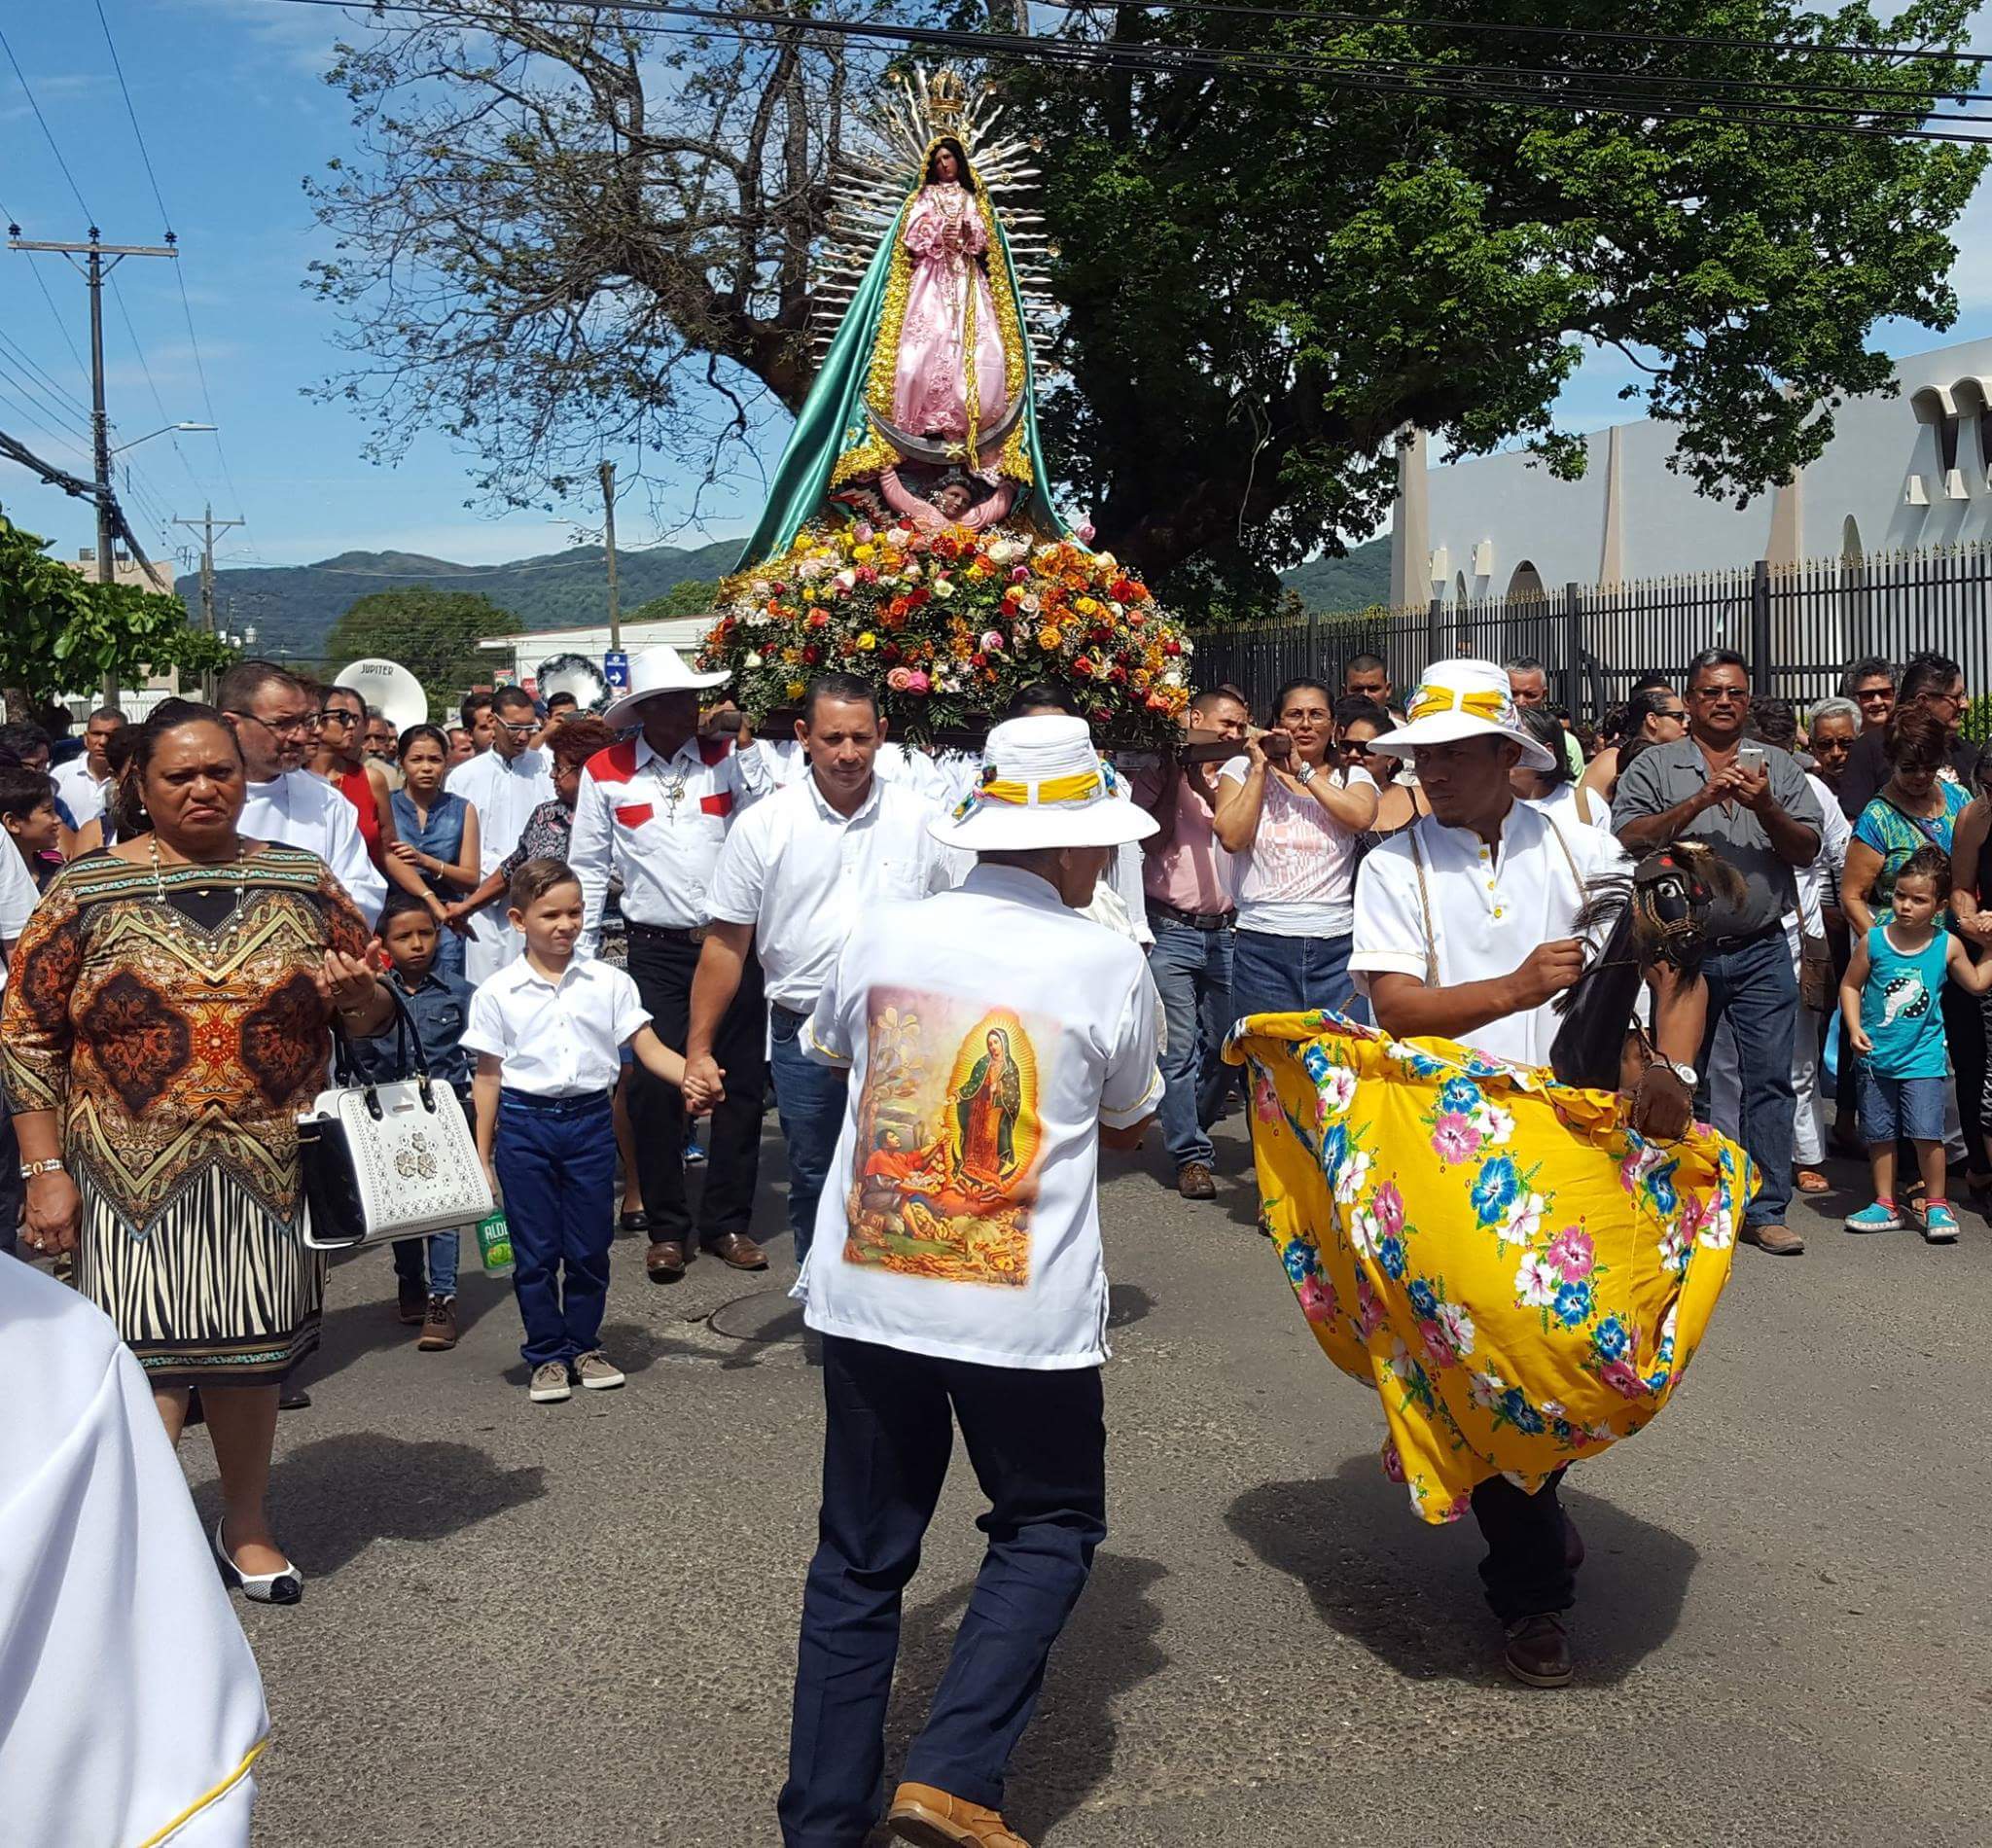 Los nicoyanos acompañan a la virgen de Guadalupe en una procesión desde la iglesia hasta la Cofradía.